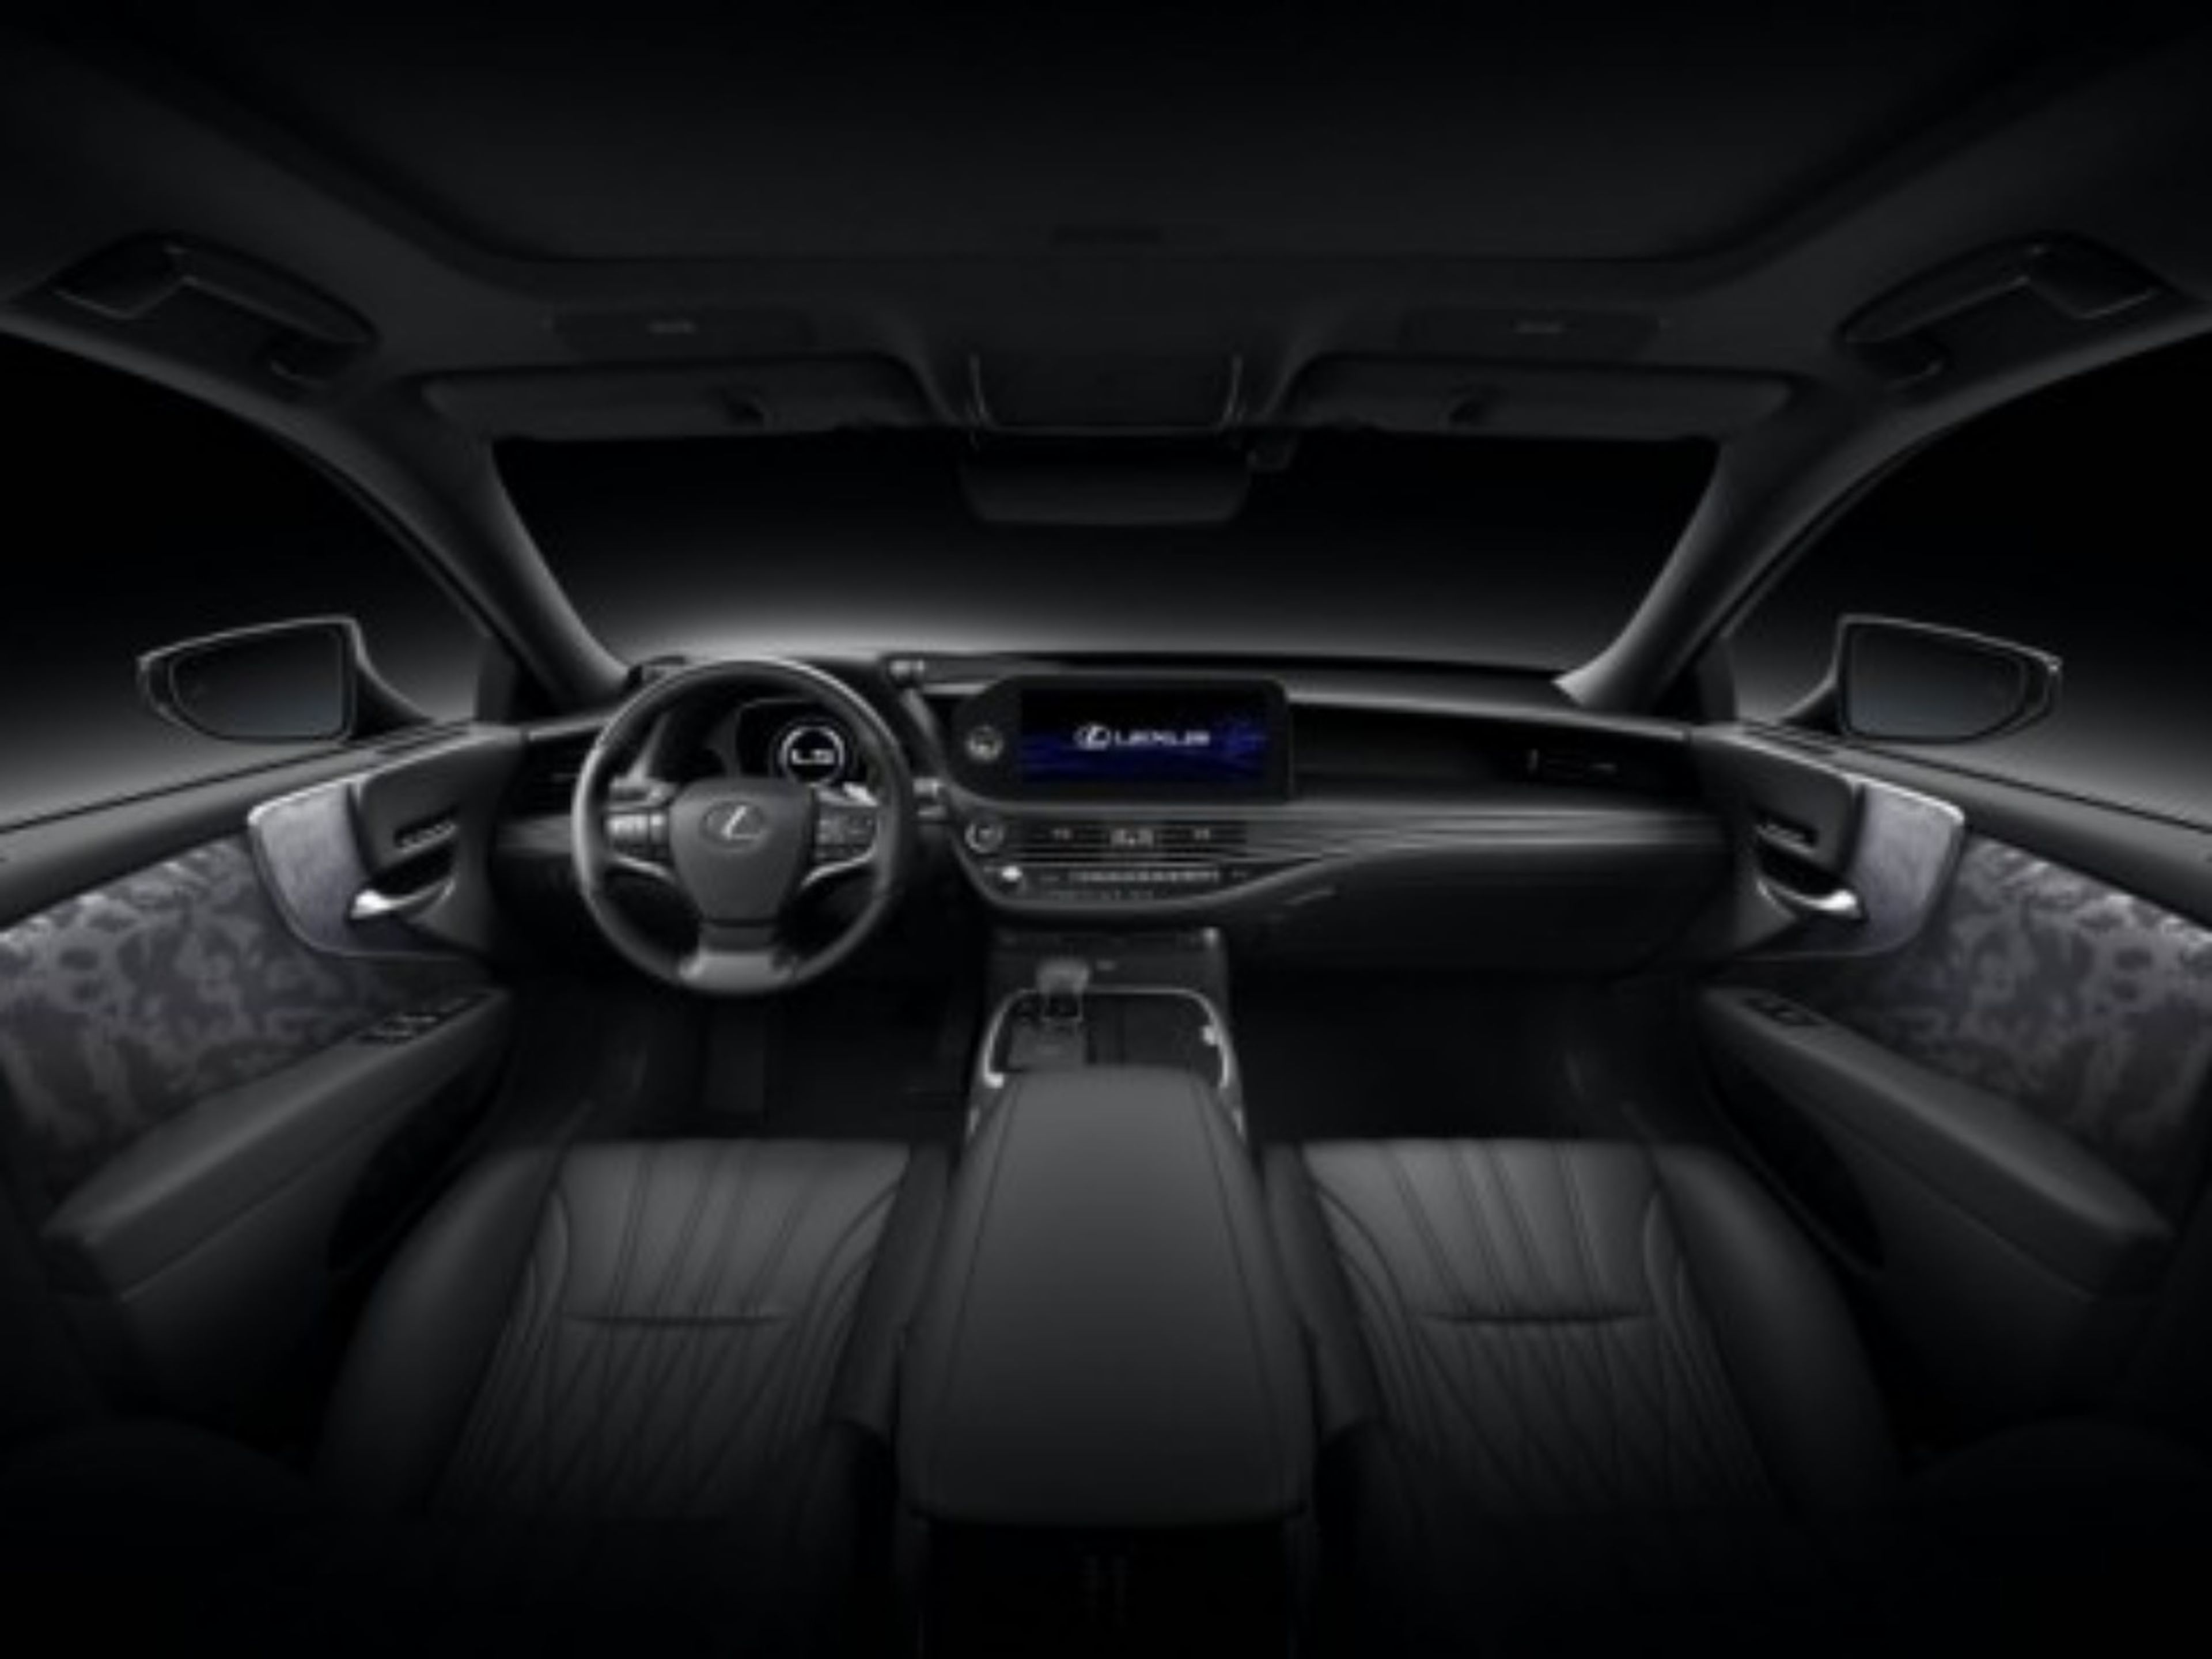 Lexus LS interior